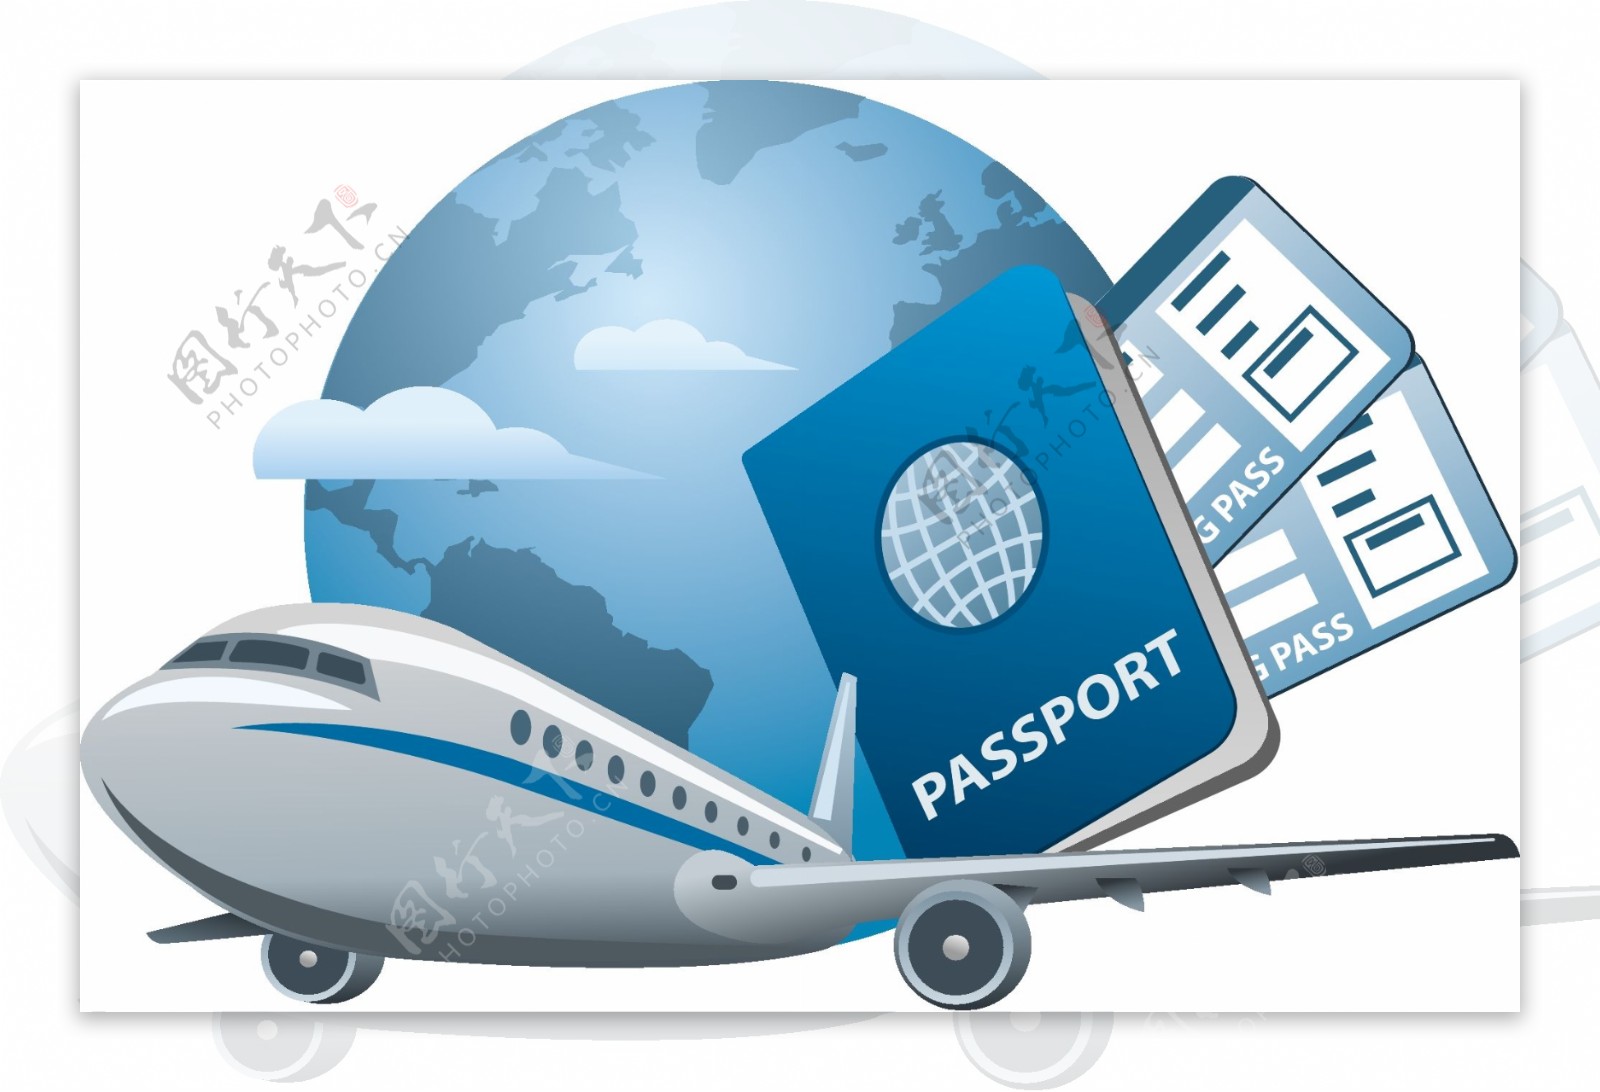 卡通客机与护照矢量素材